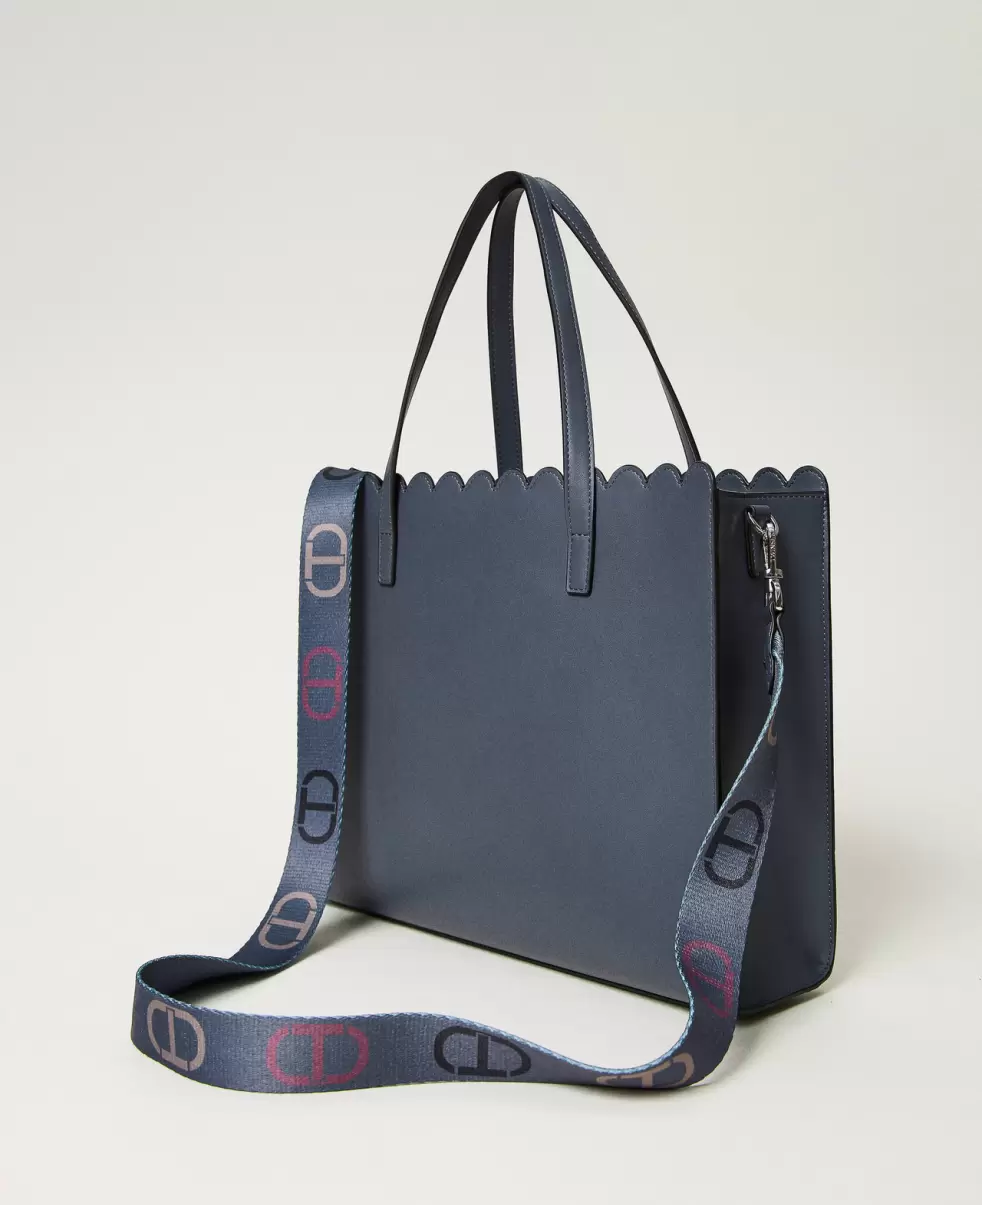 Twinset Neues Produkt Handtaschen Damen Großer Shopper Lacey Mit Wellenrand Blaugrau - 2